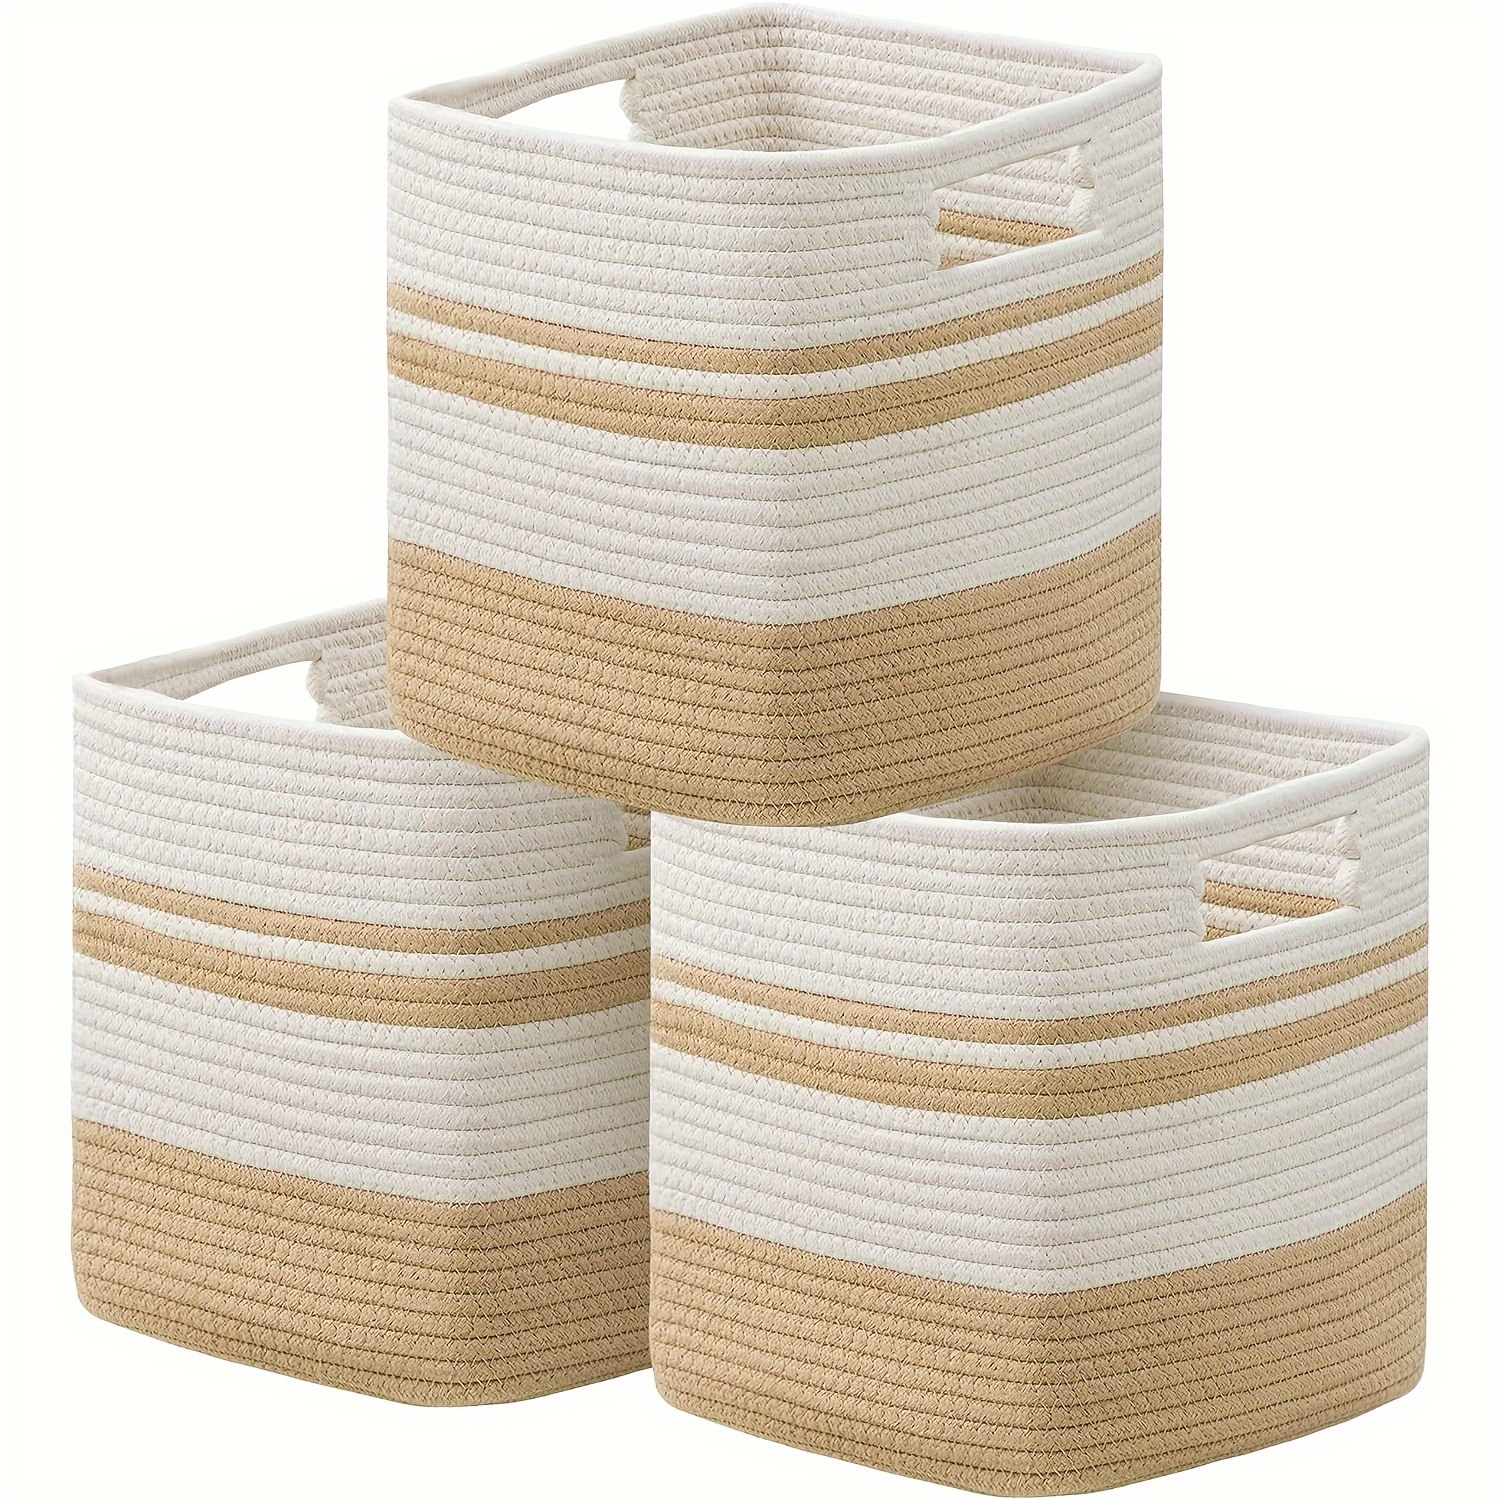 Baskets For Shelves Storage cube Shelf Closet Storage - Temu